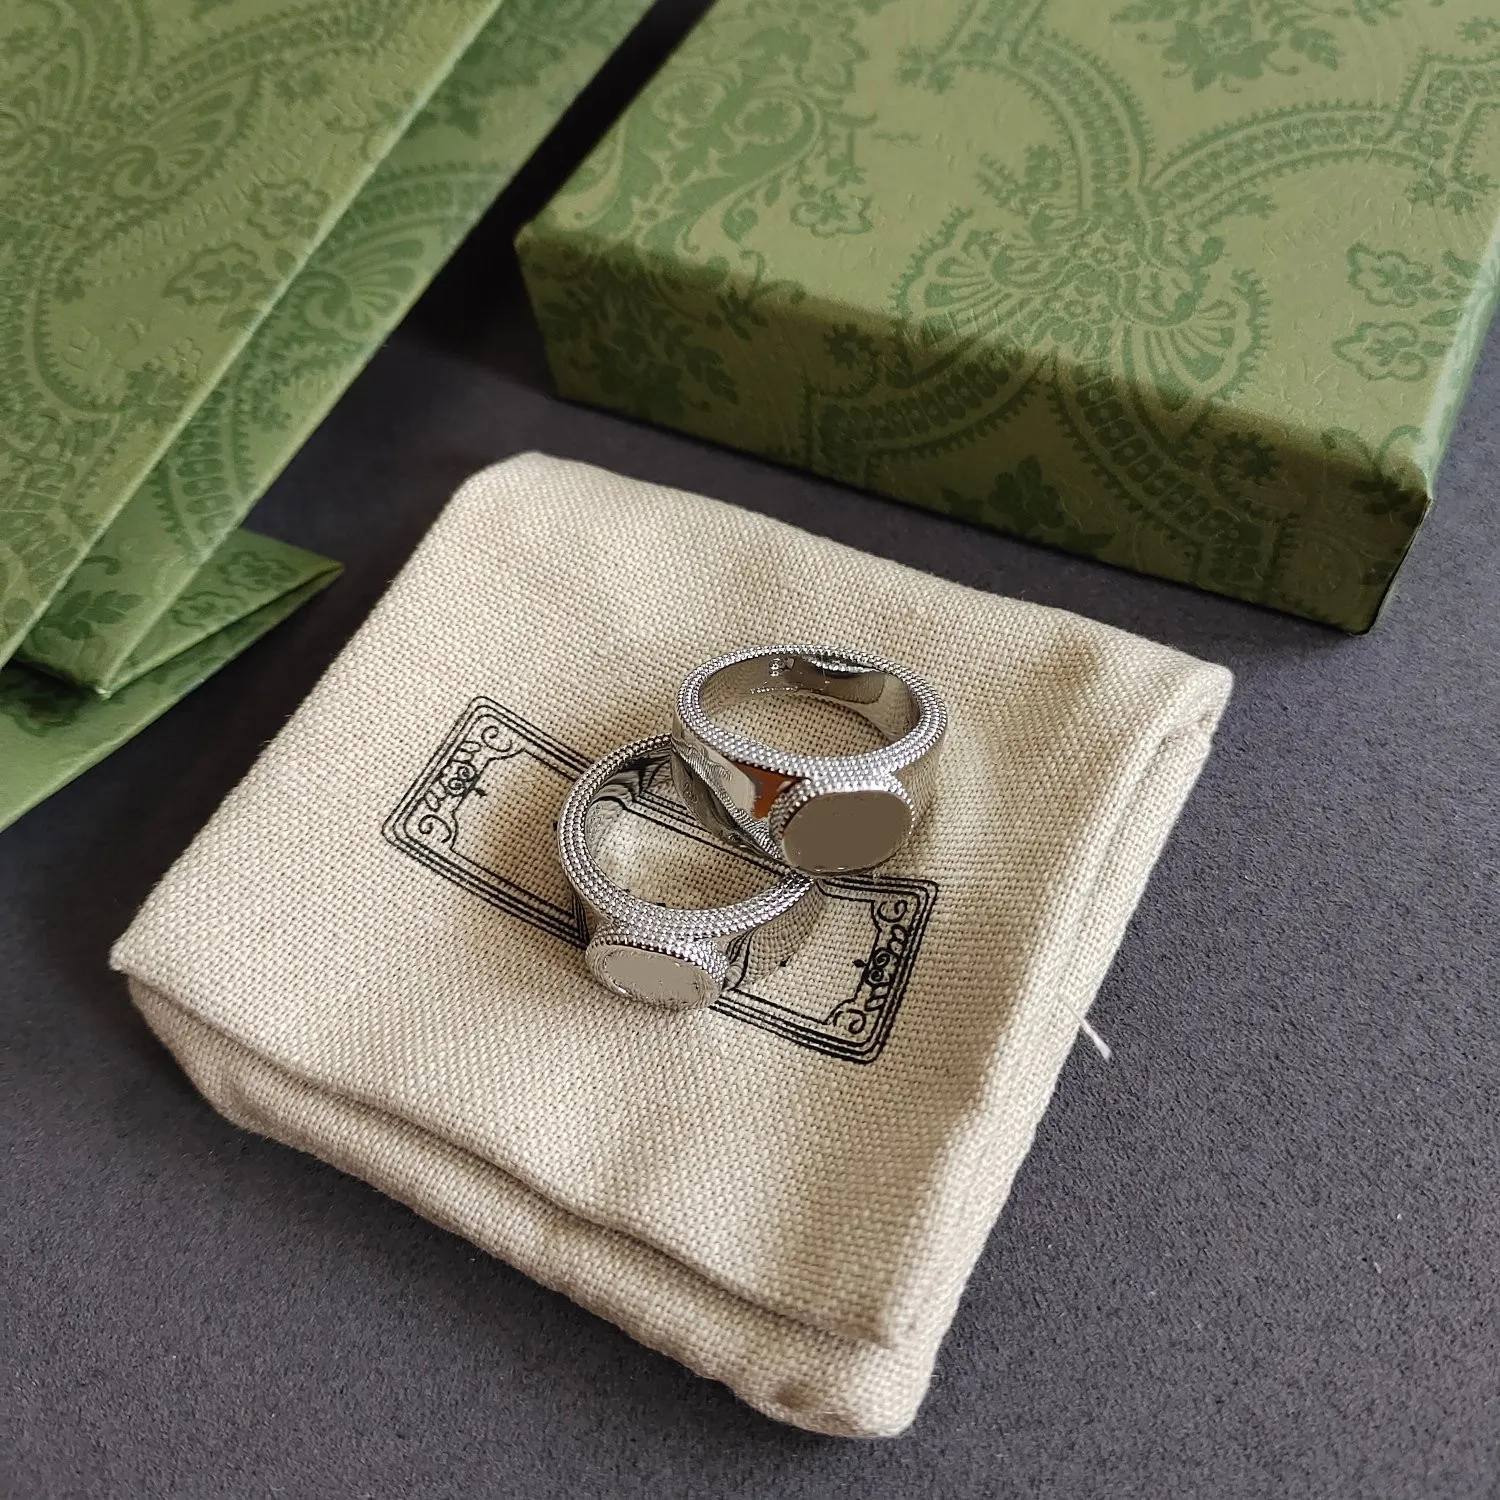 Neues Design Ring für Frau Mann Silber Ringe Messing Buchstaben Charm Ring Modeschmuck Versorgung